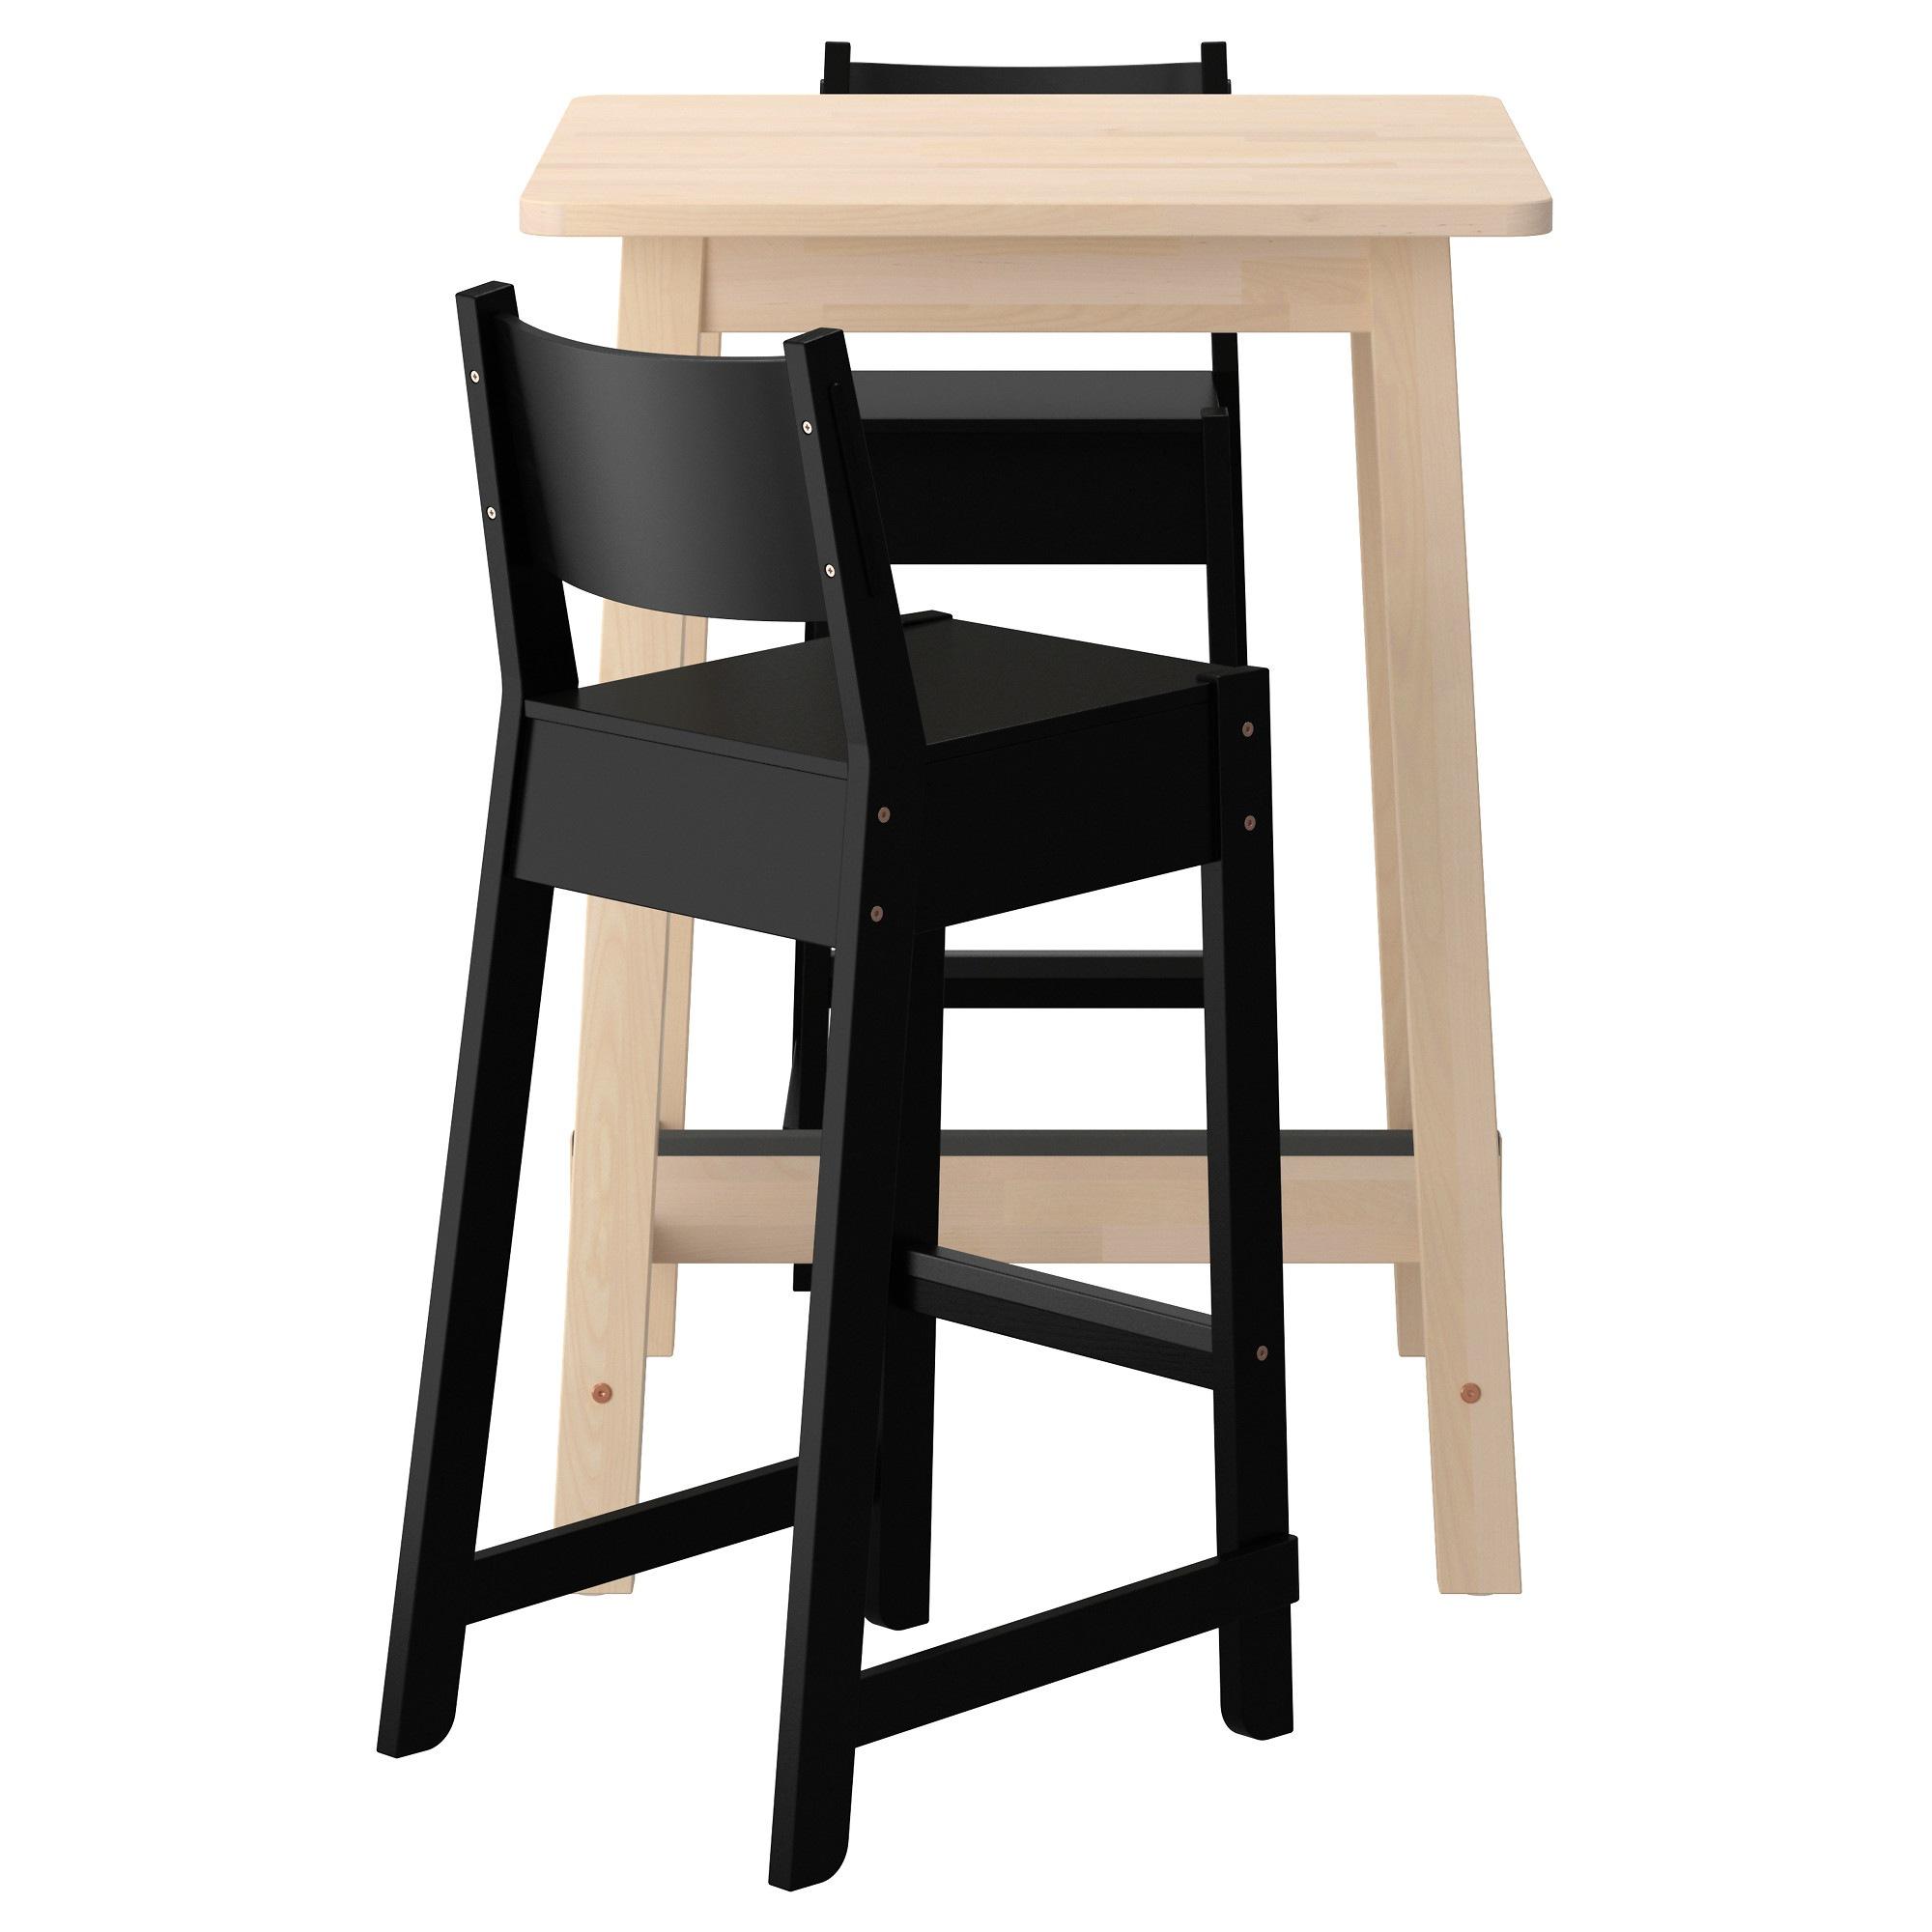 [ด่วน!! โปรโมชั่นมีจำนวนจำกัด] โต๊ะบาร์และบาร์เก้าอี้วางเท้า เก้าอี้วางขา เก้าอี้ตูล สตูล 2 ตัว โต๊ะคาเฟ่ NORRÅKER / NORRÅKER